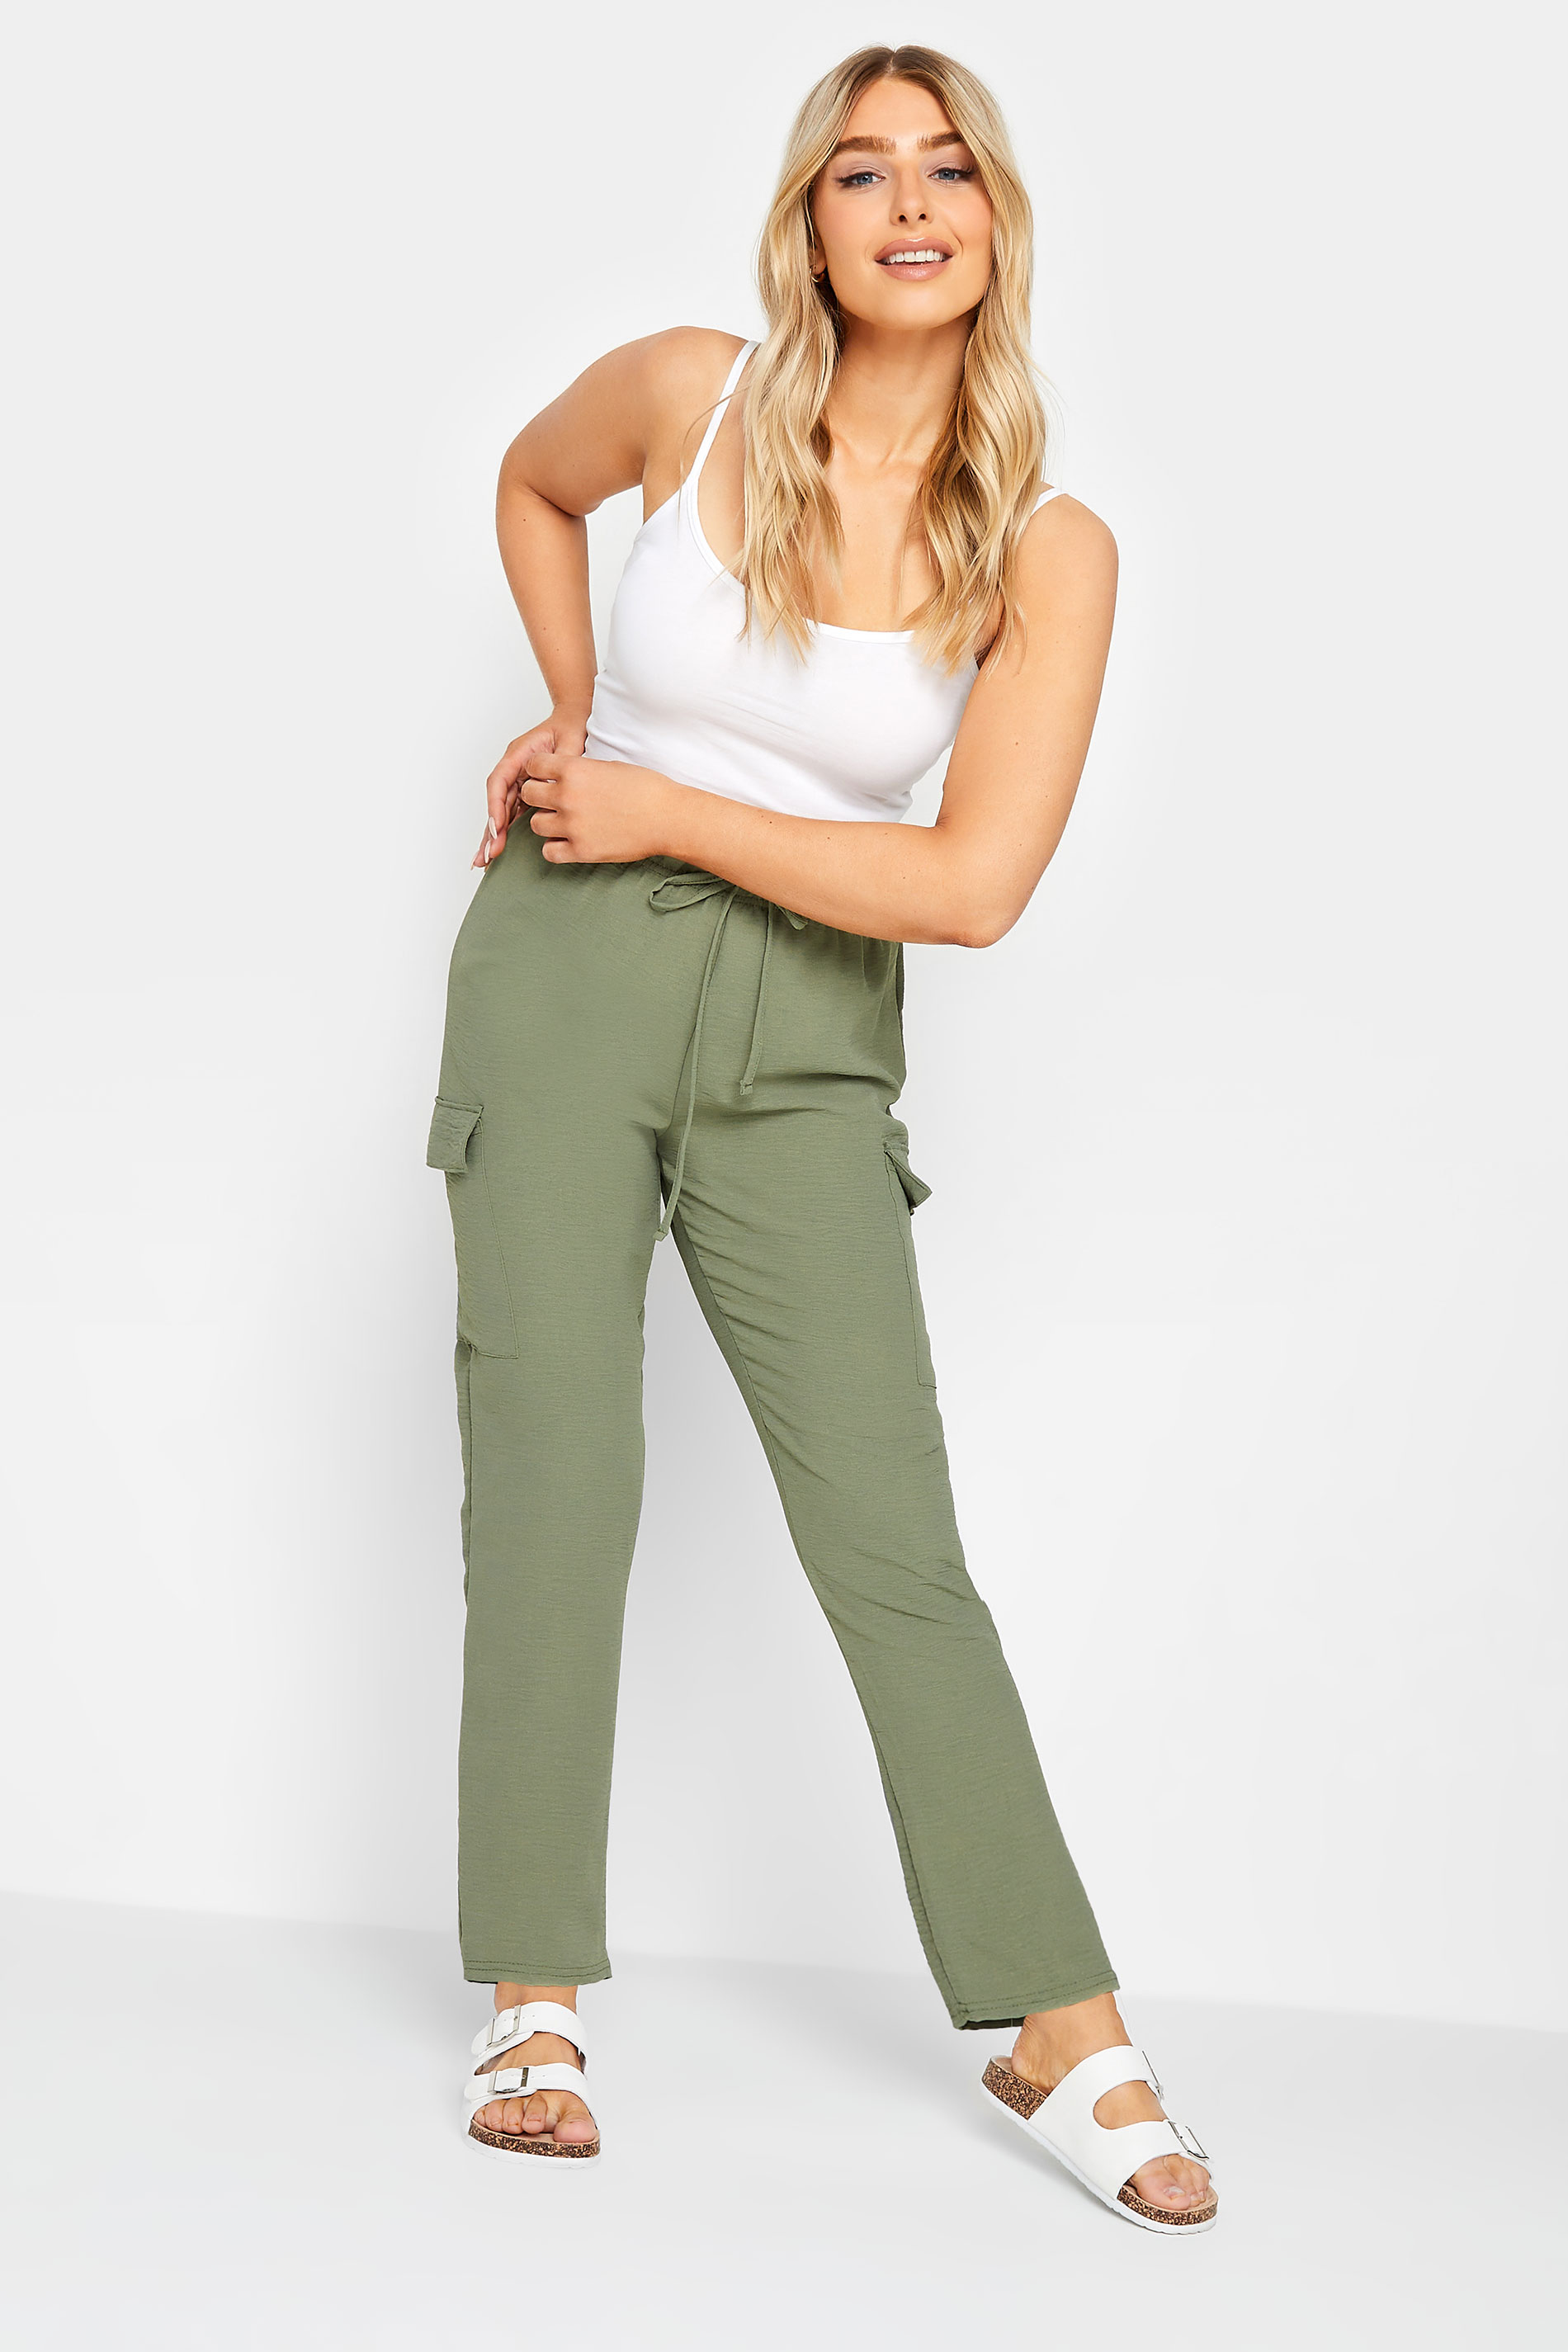 M&Co Khaki Green Cargo Slim Leg Trousers | M&Co 2